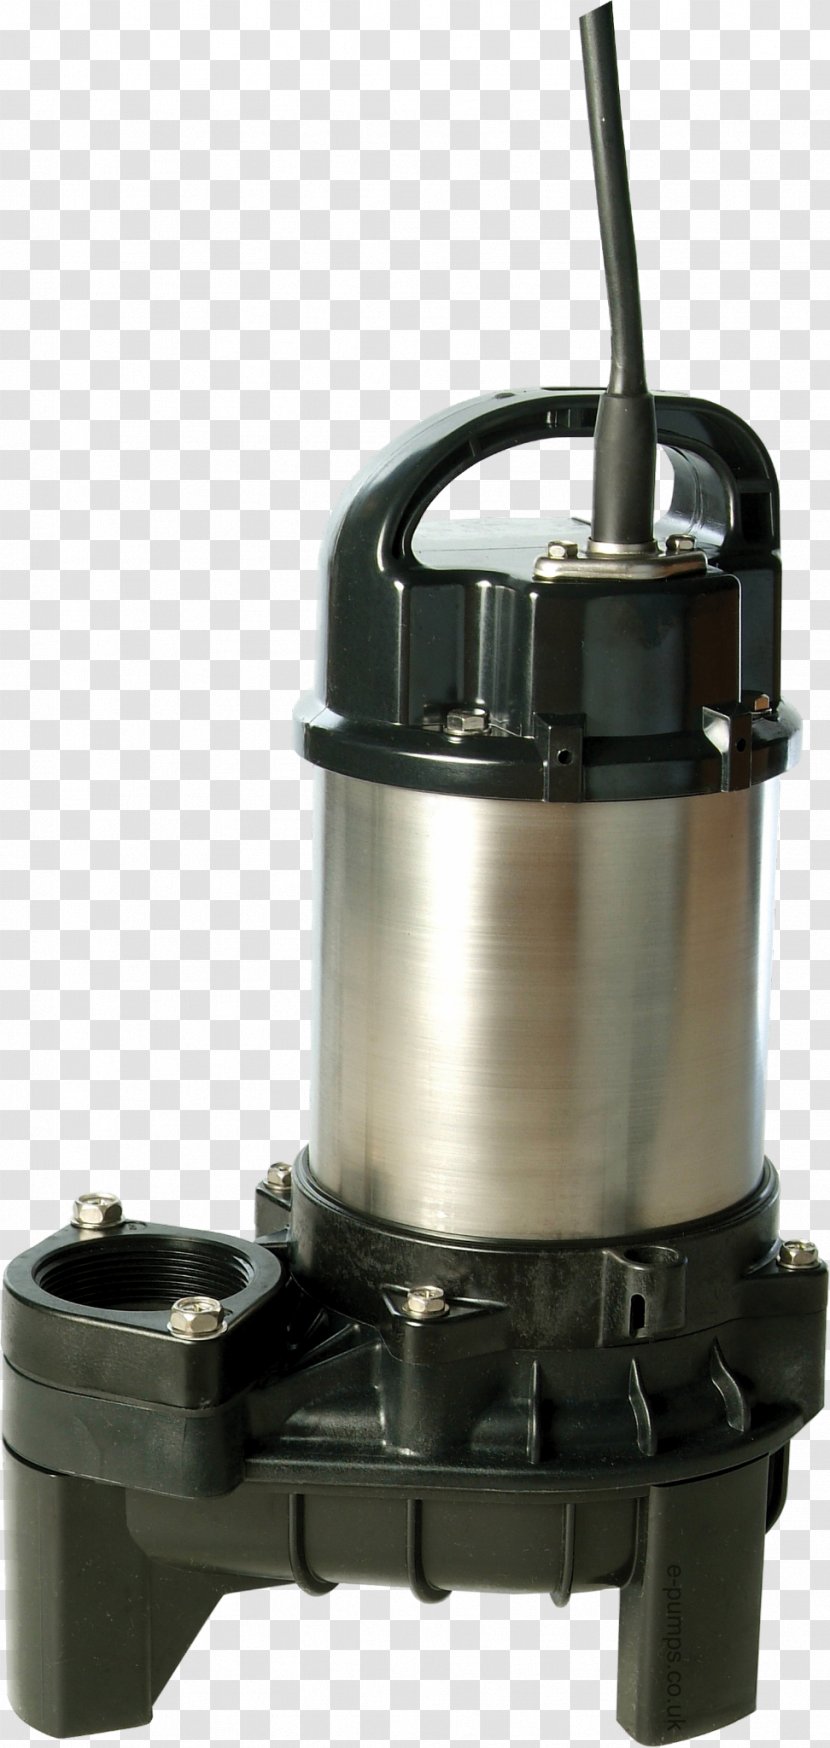 Submersible Pump Sewage Pumping Slurry - Pumps Transparent PNG